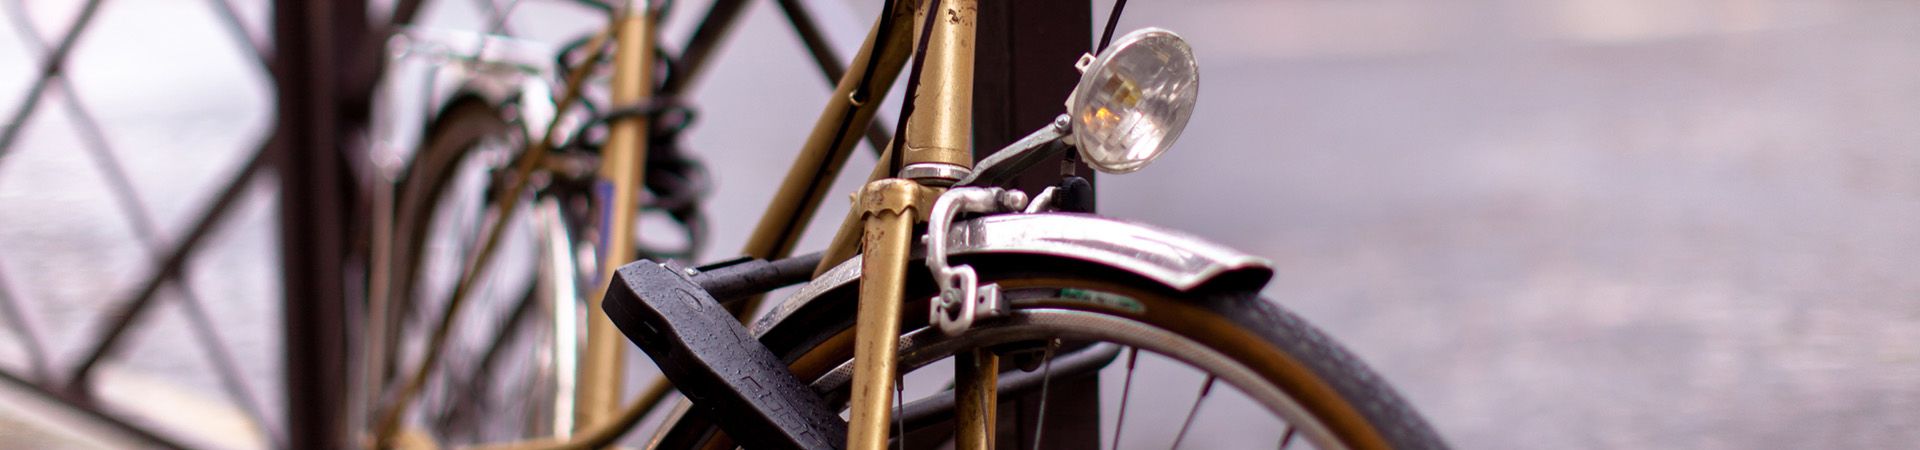 Fiets anti-diefstalbeveiliging – veilige fietssloten voorkomen diefstal van je fiets.